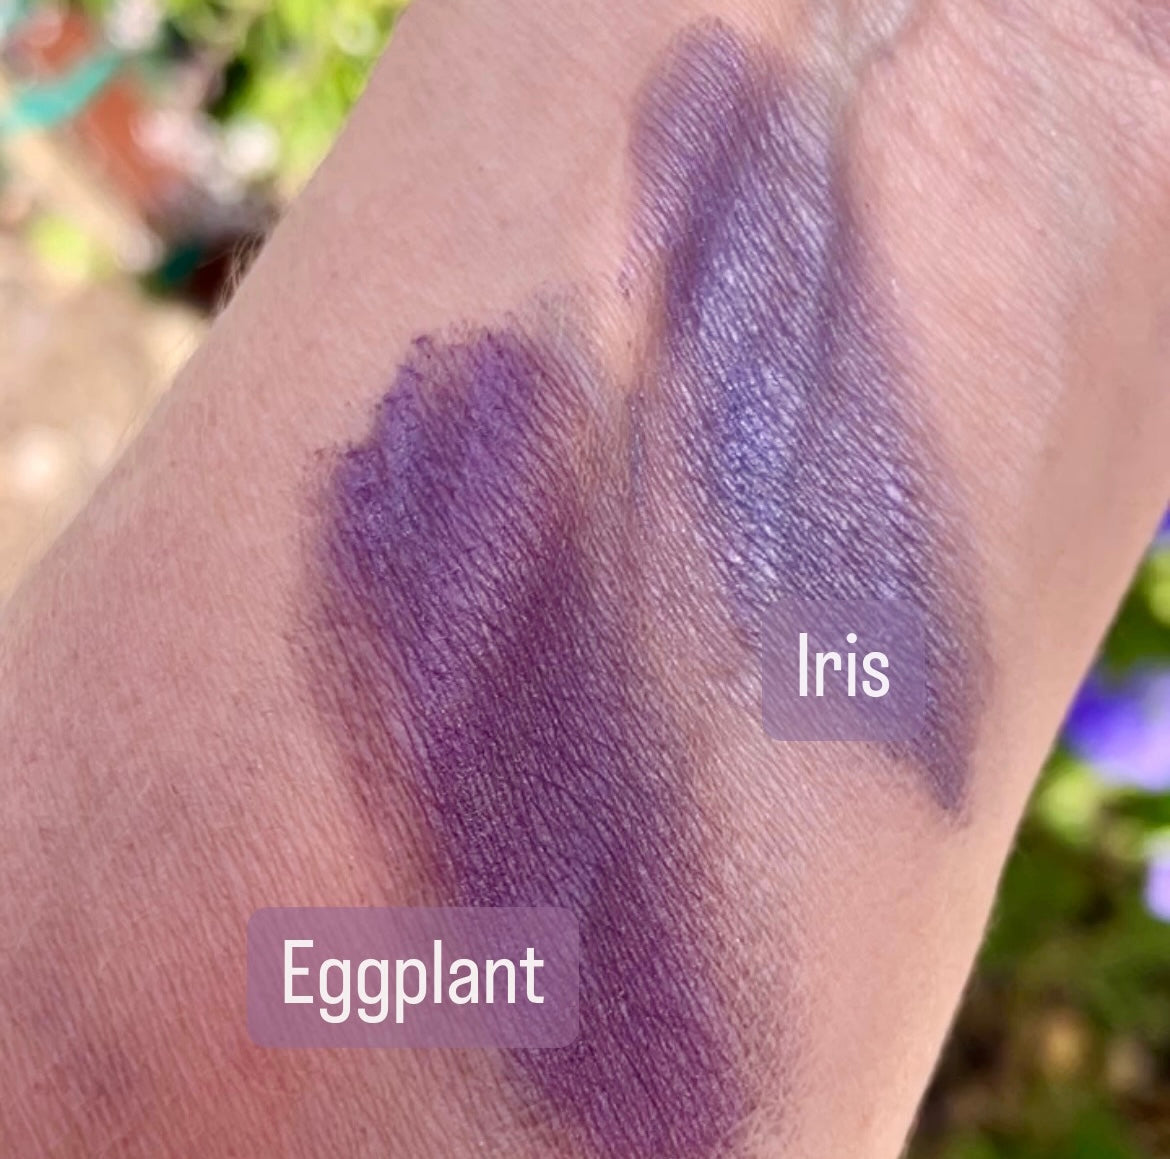 swatch of eggplant and iris purple eyeshadow